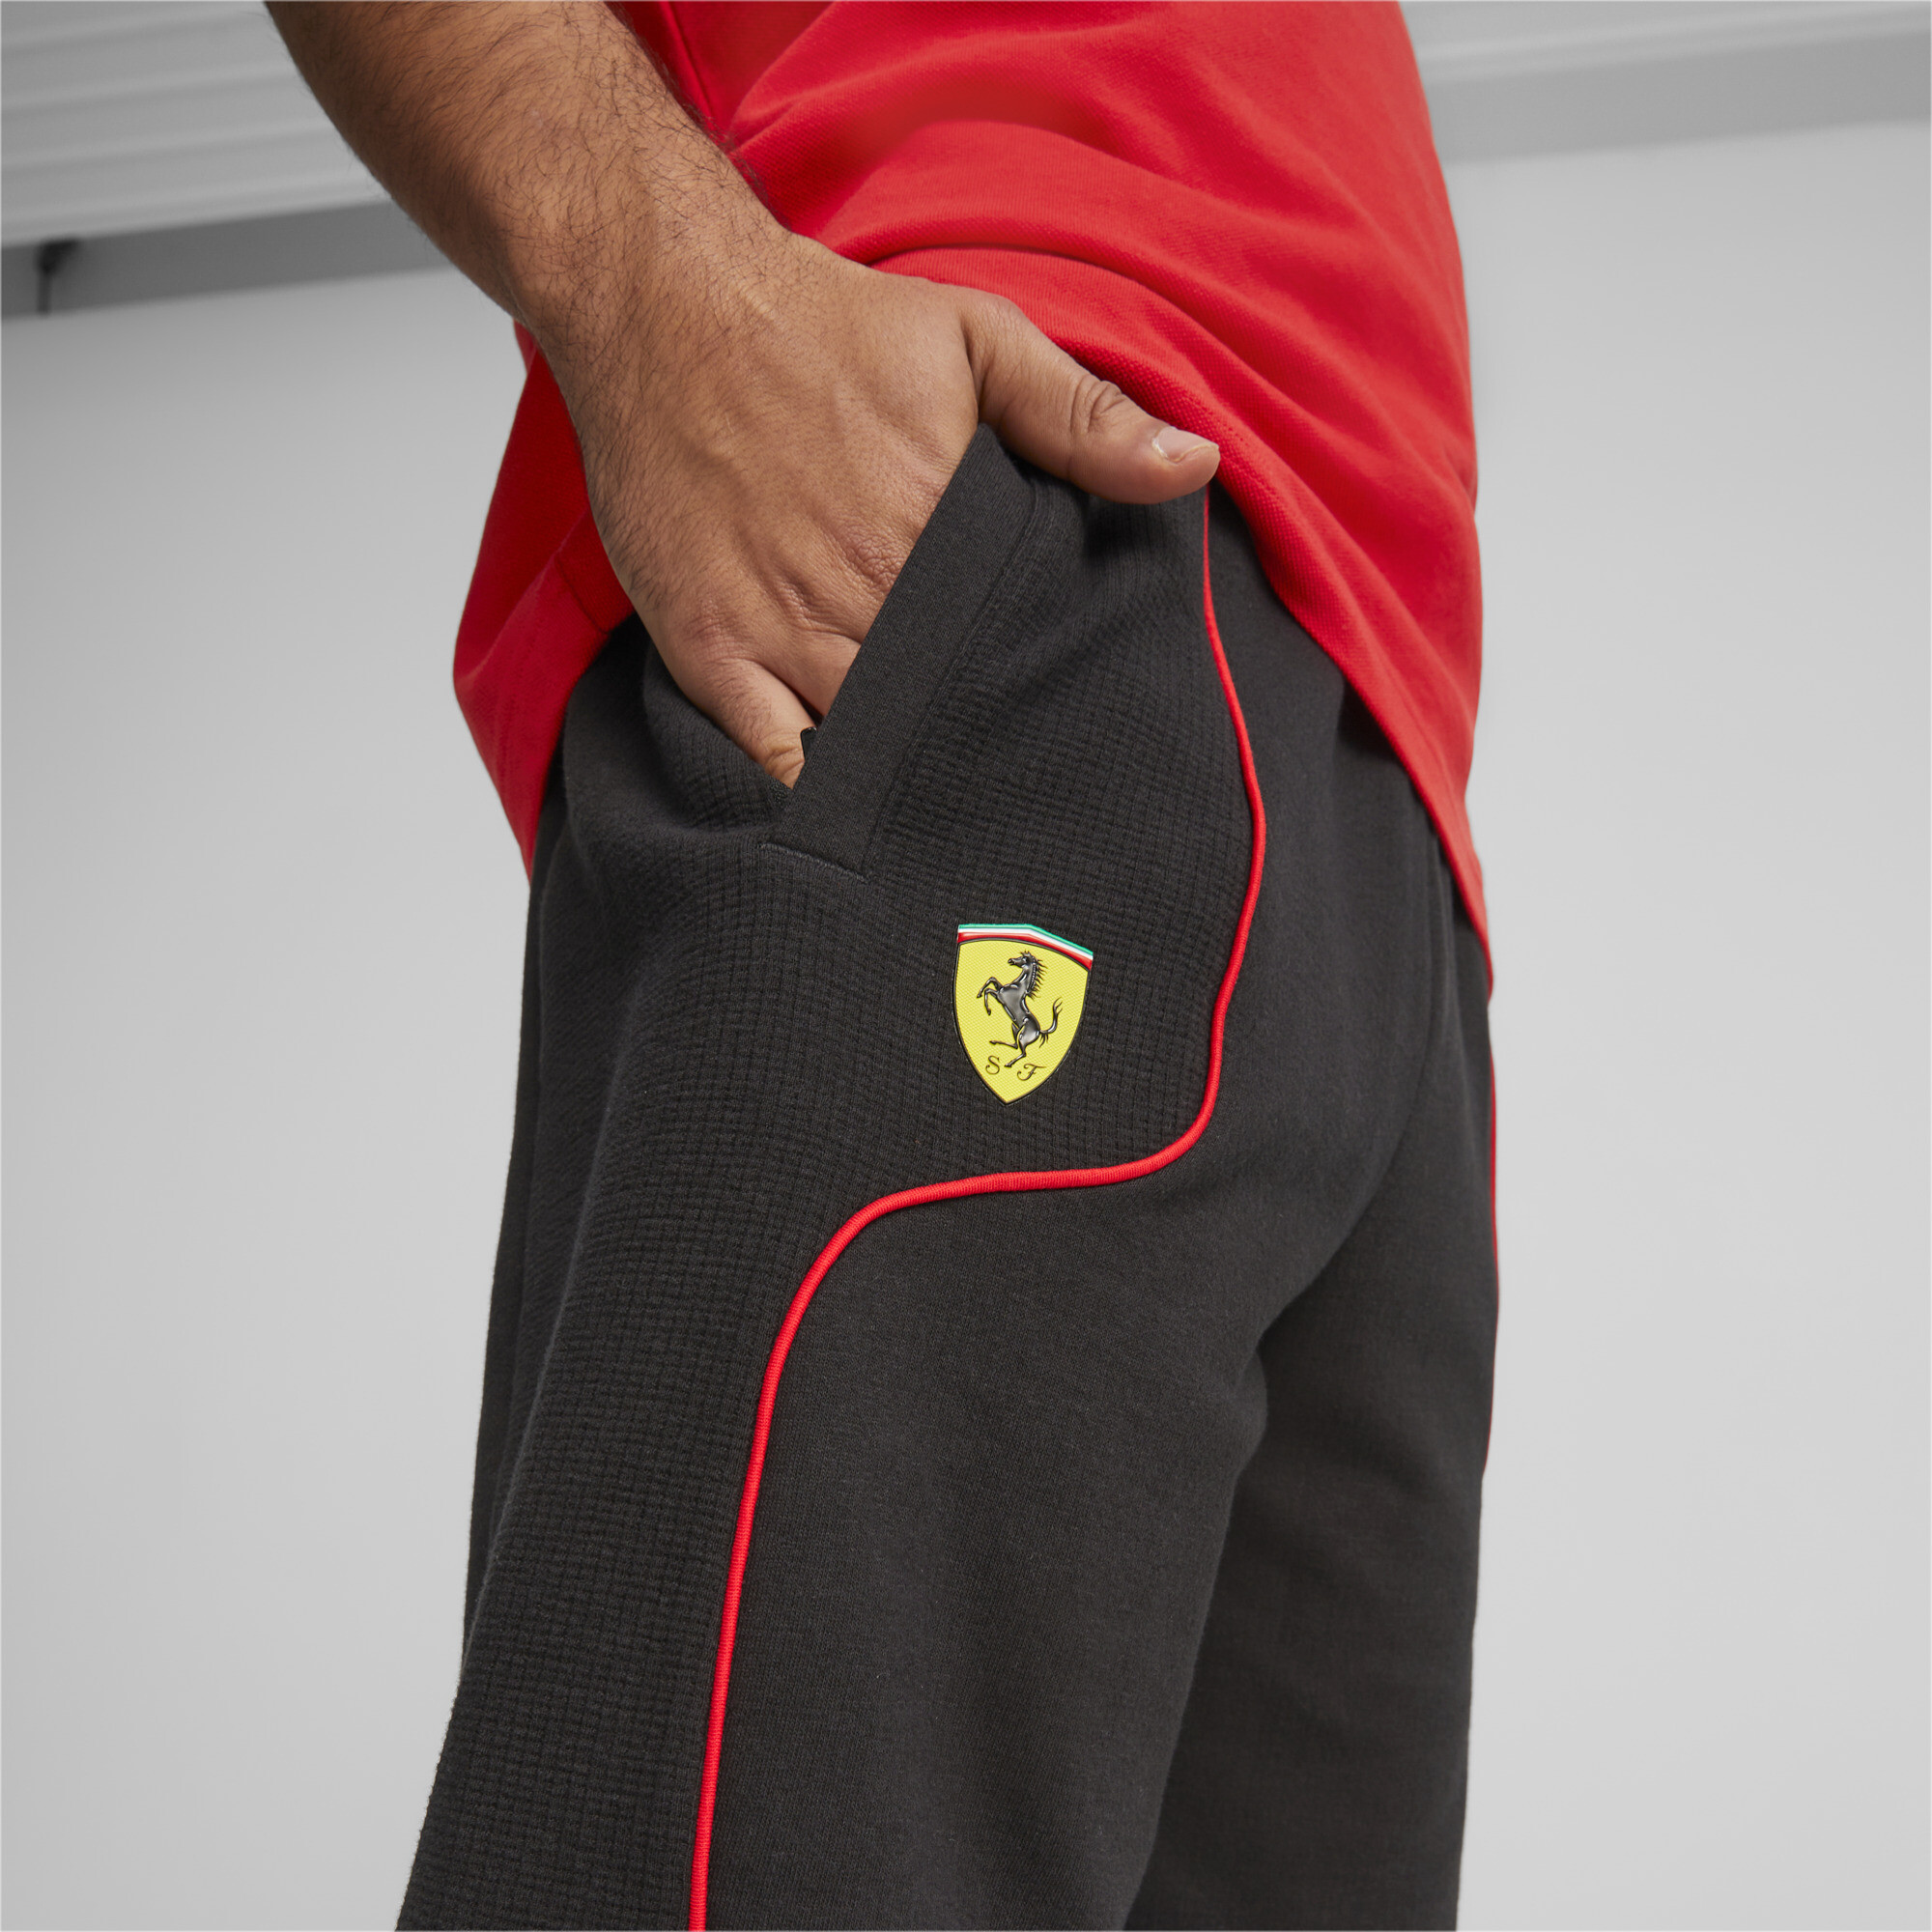 Men's PUMA Scuderia Ferrari Race Shorts Men In Black, Size Medium